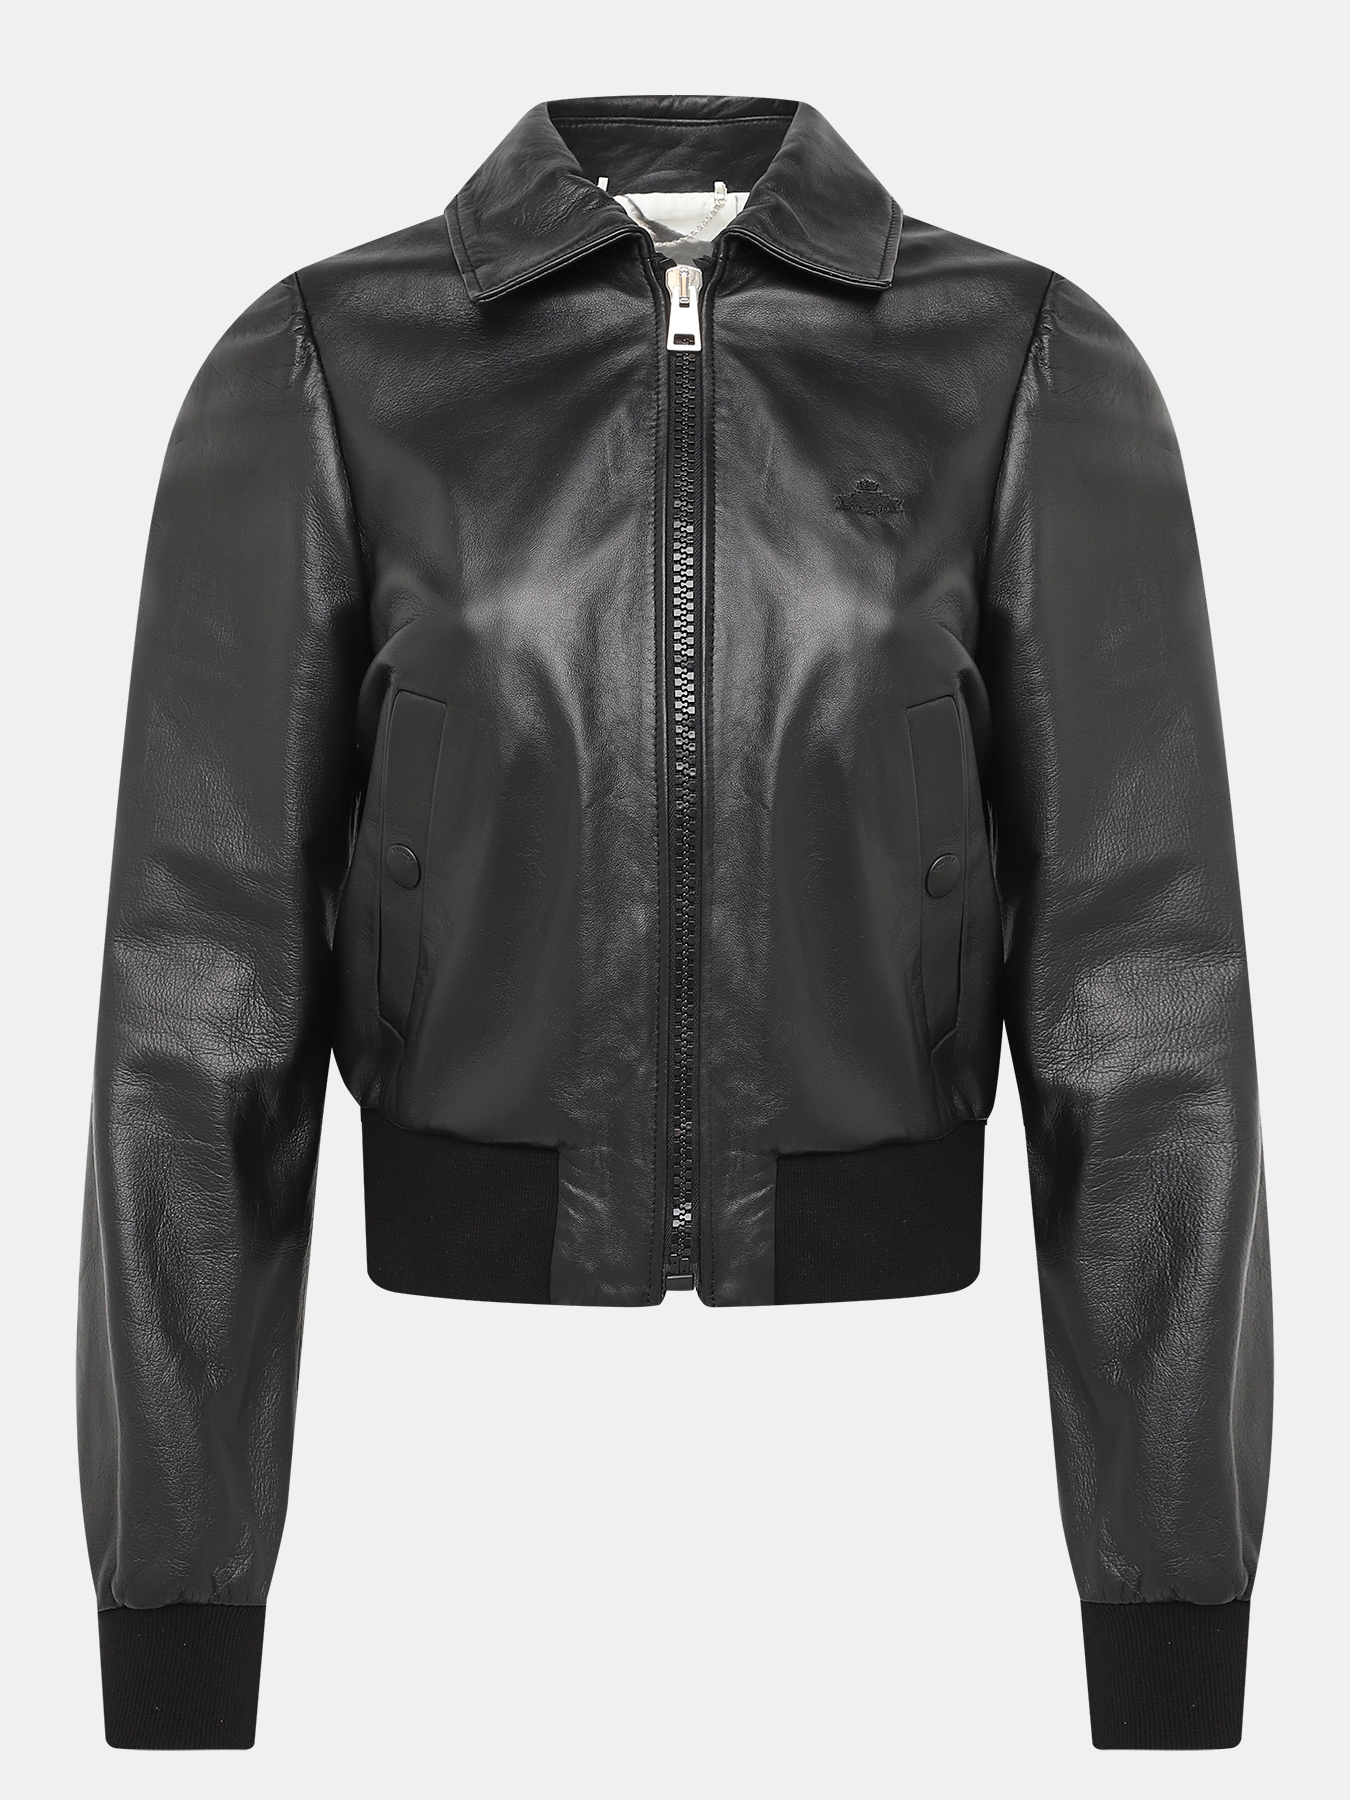 Кожаная куртка REPLAY 410478-044, цвет черный, размер 46-48